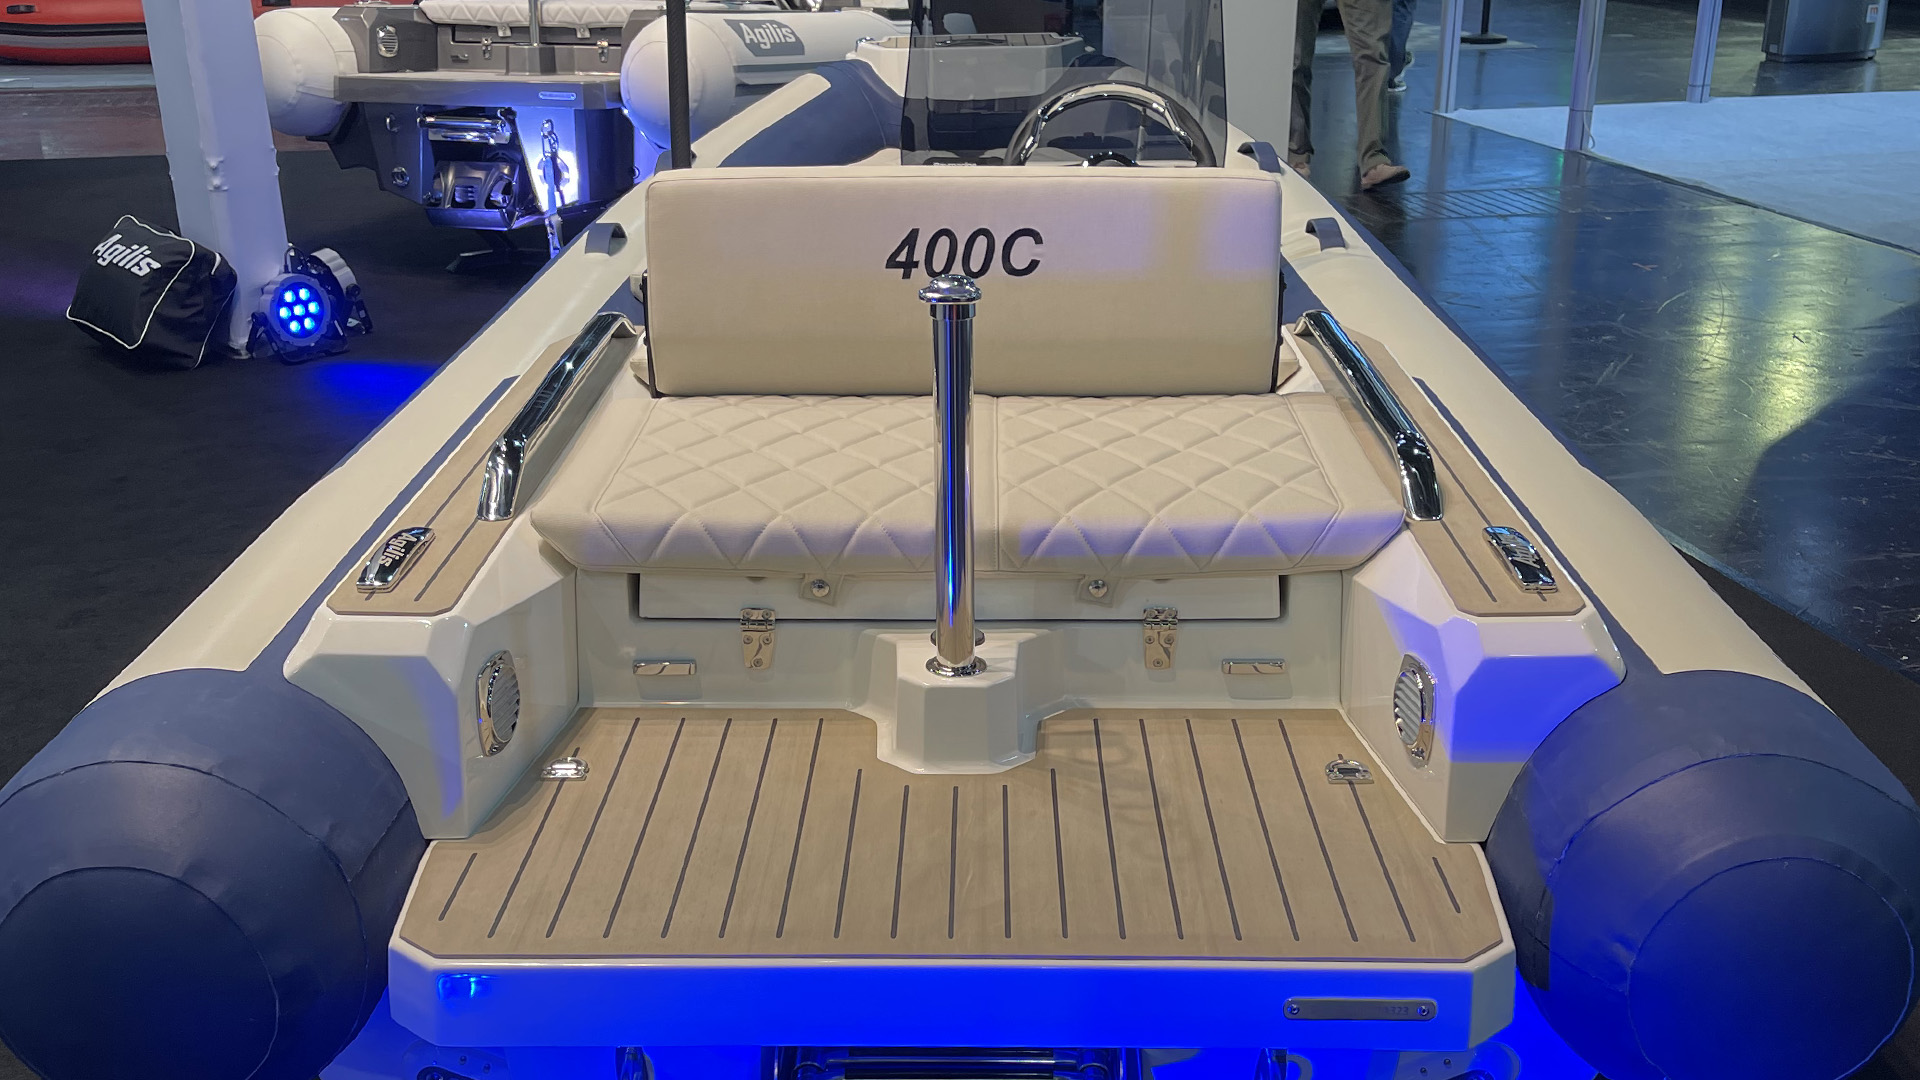 Agilis 400C - interior, seat, deck